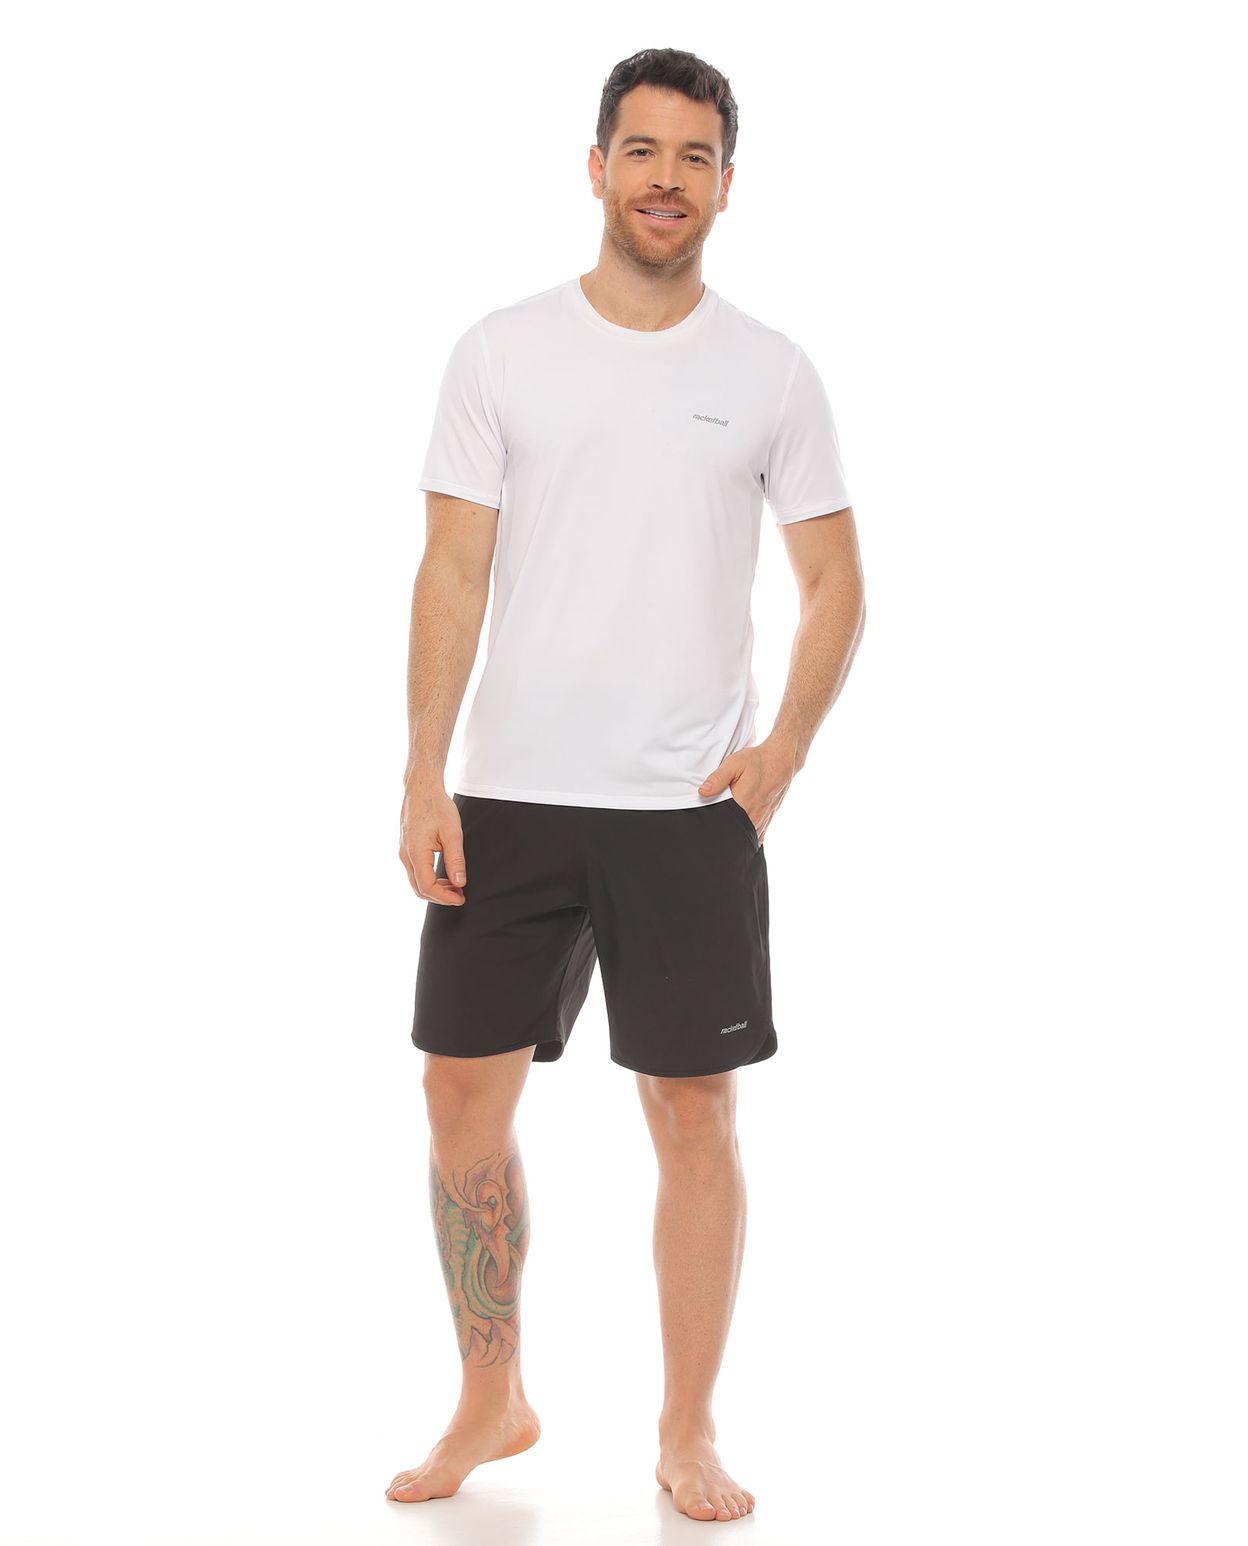 modelo con pantaloneta deportiva color negro y camiseta deportiva color blanco cuerpo completo